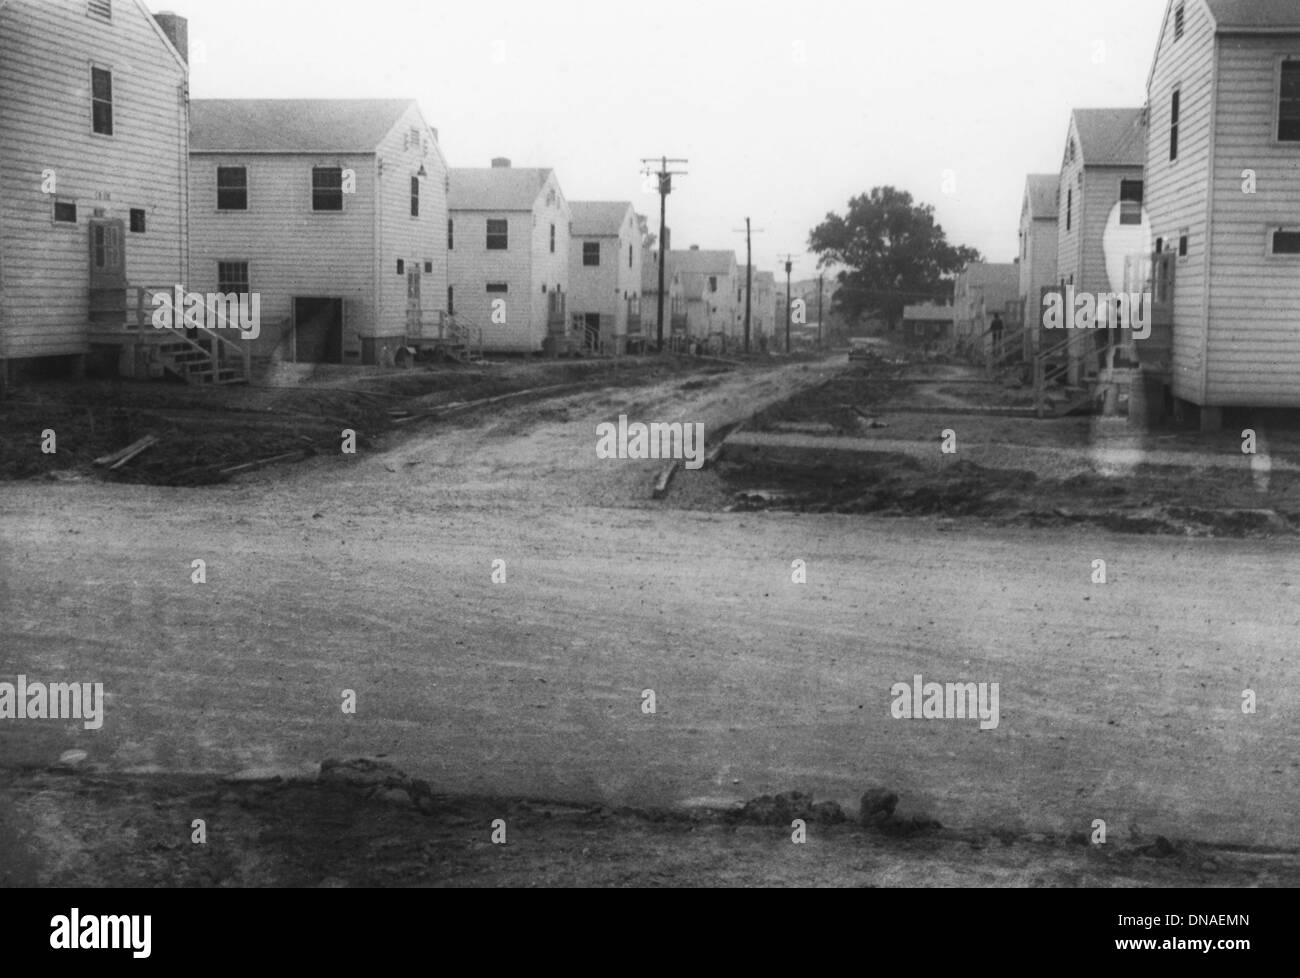 Militärische Bauten entlang der unbefestigten Straße, WWII, 2nd Battalion, 389th Infanterie, US-Armee militärische Basis Indiana, USA, 1942 Stockfoto